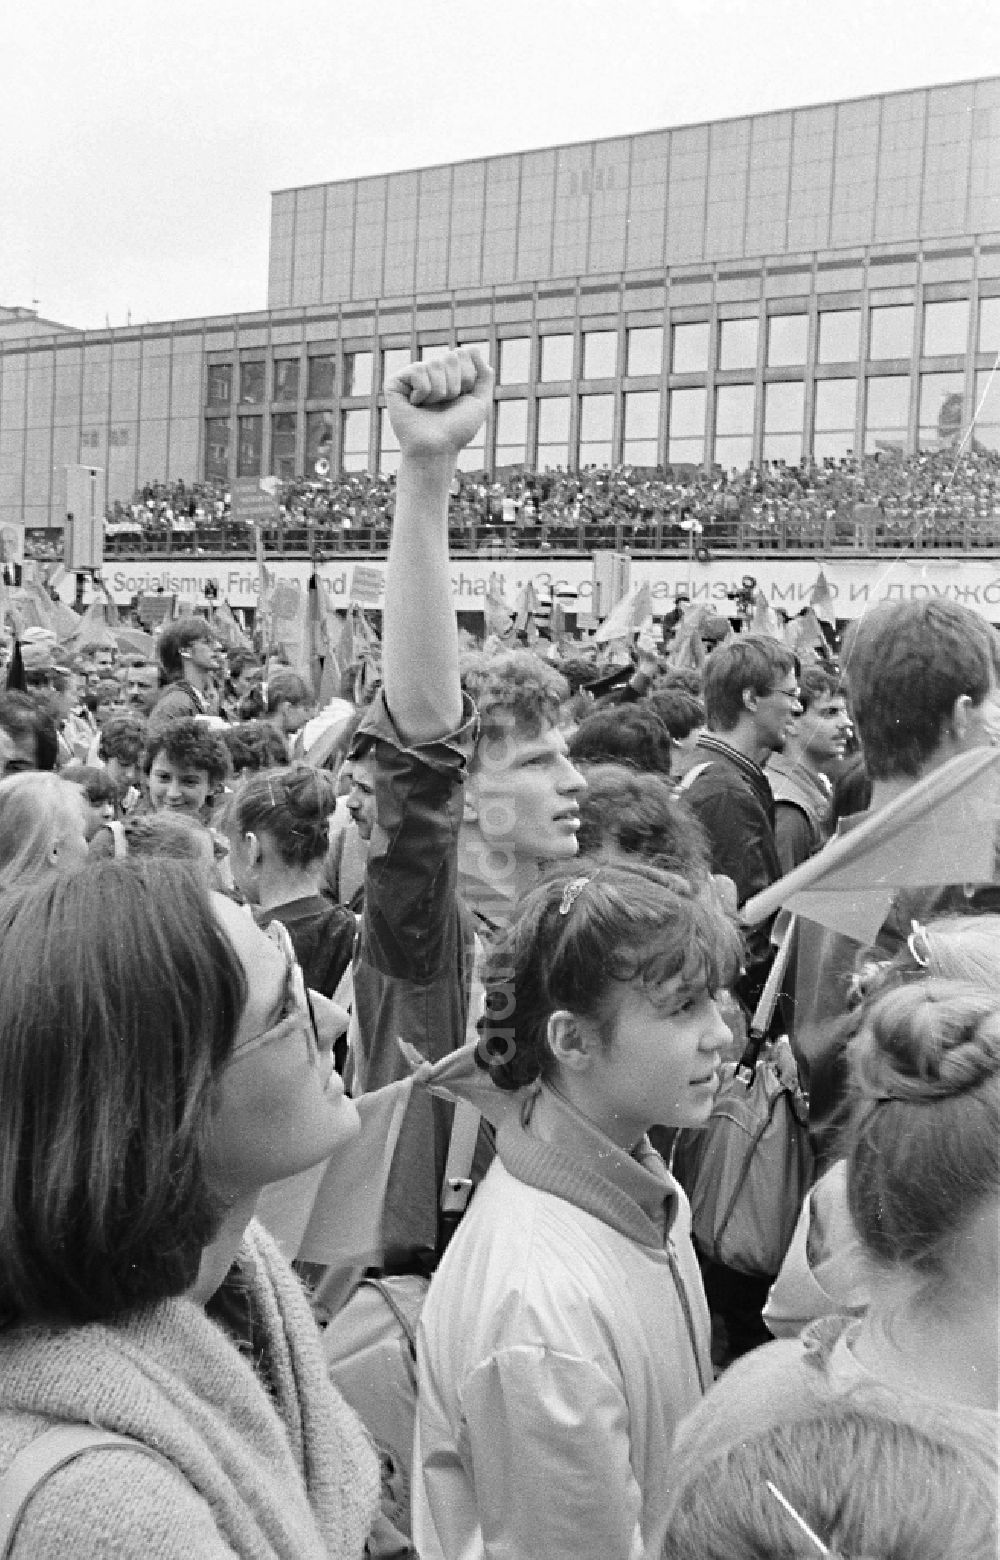 DDR-Bildarchiv: Gera - Teilnehmer des VII. Festival der Freundschaft auf den Straßen in Gera in Thüringen in der DDR